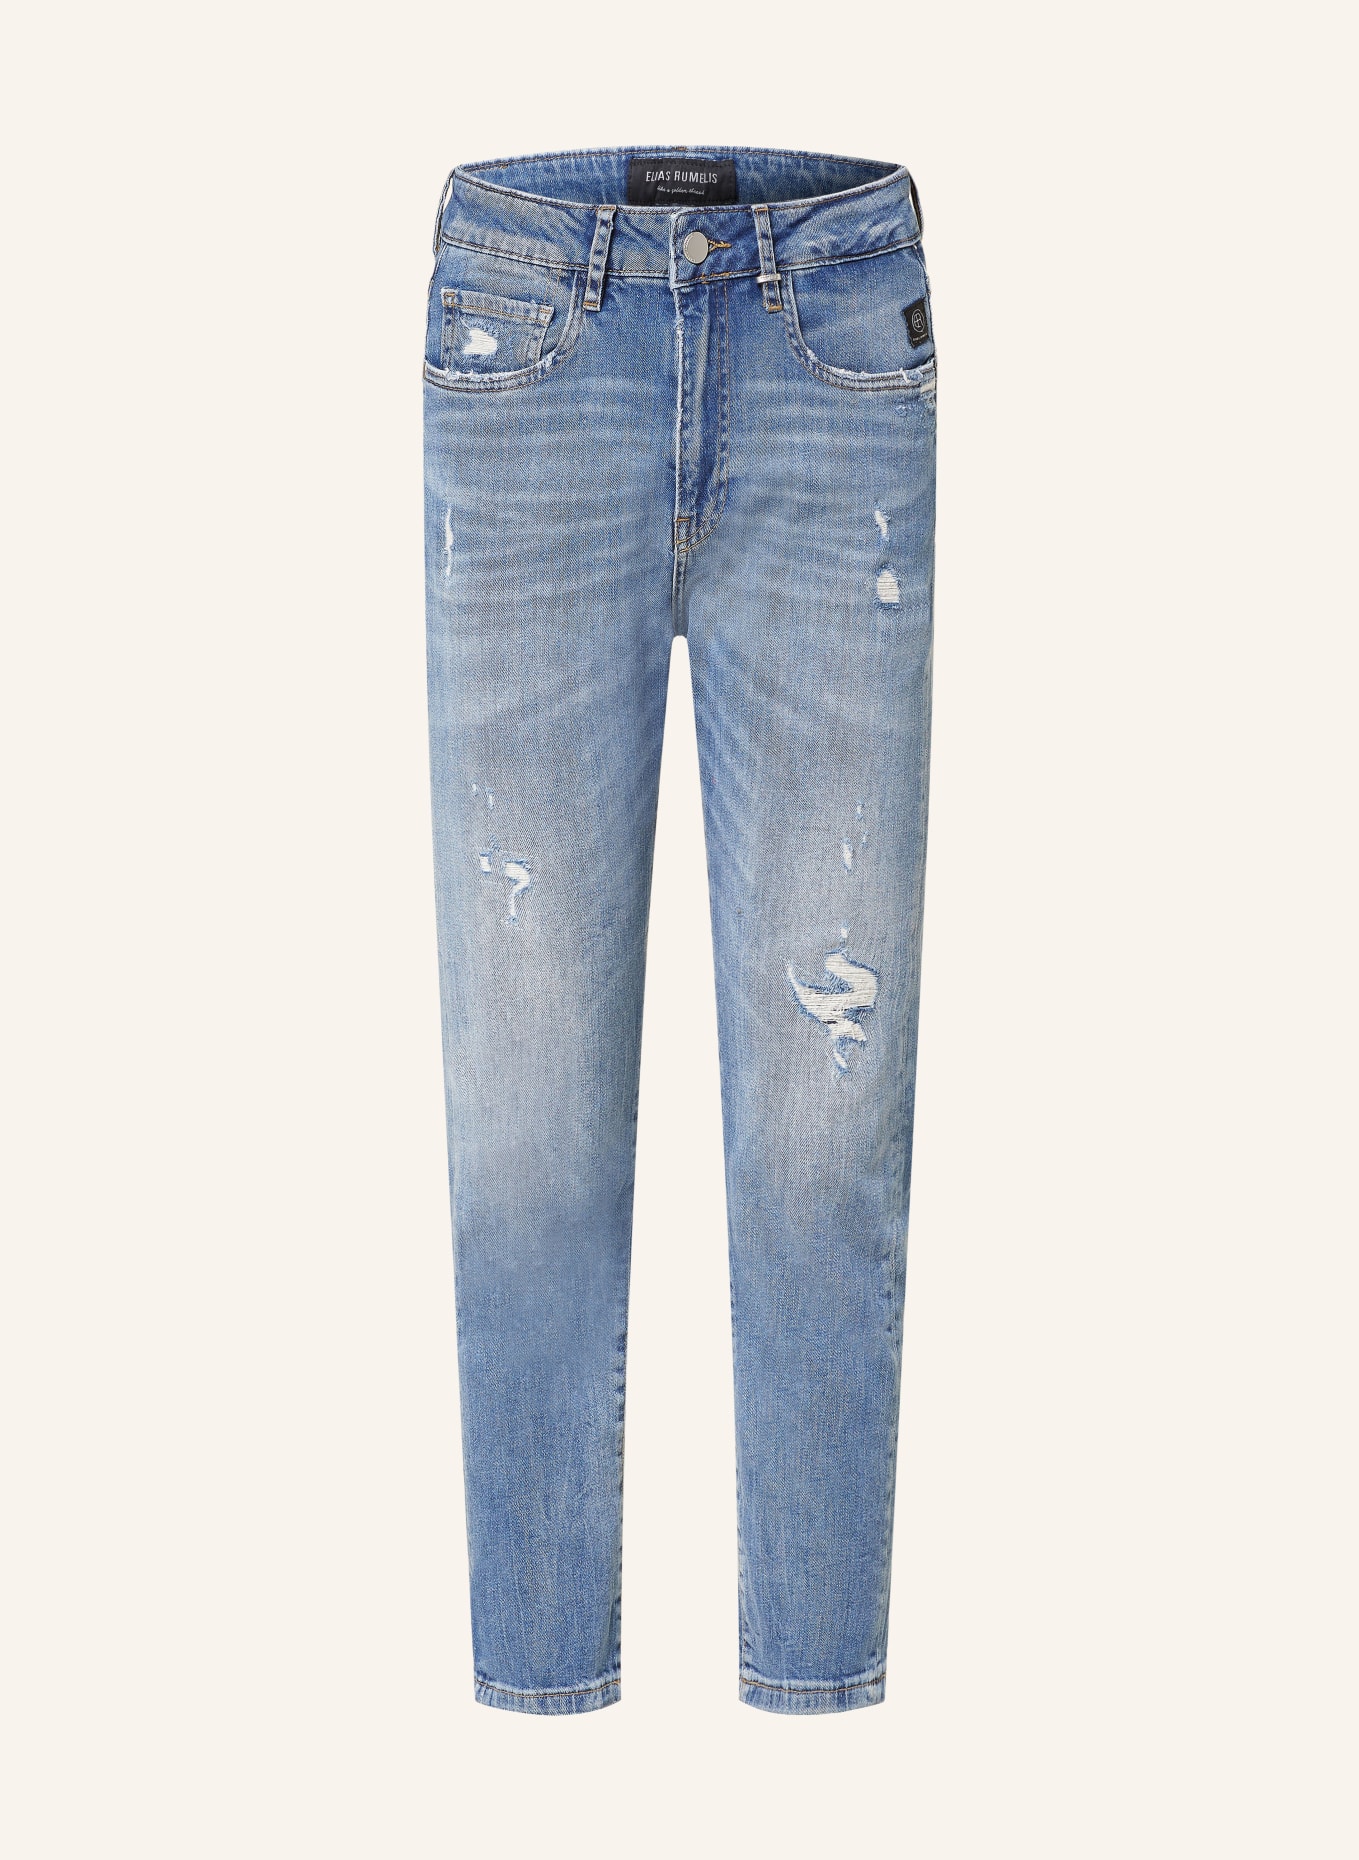 ELIAS RUMELIS Boyfriend jeans ERLEONA, Color: 934 middle blue (Image 1)